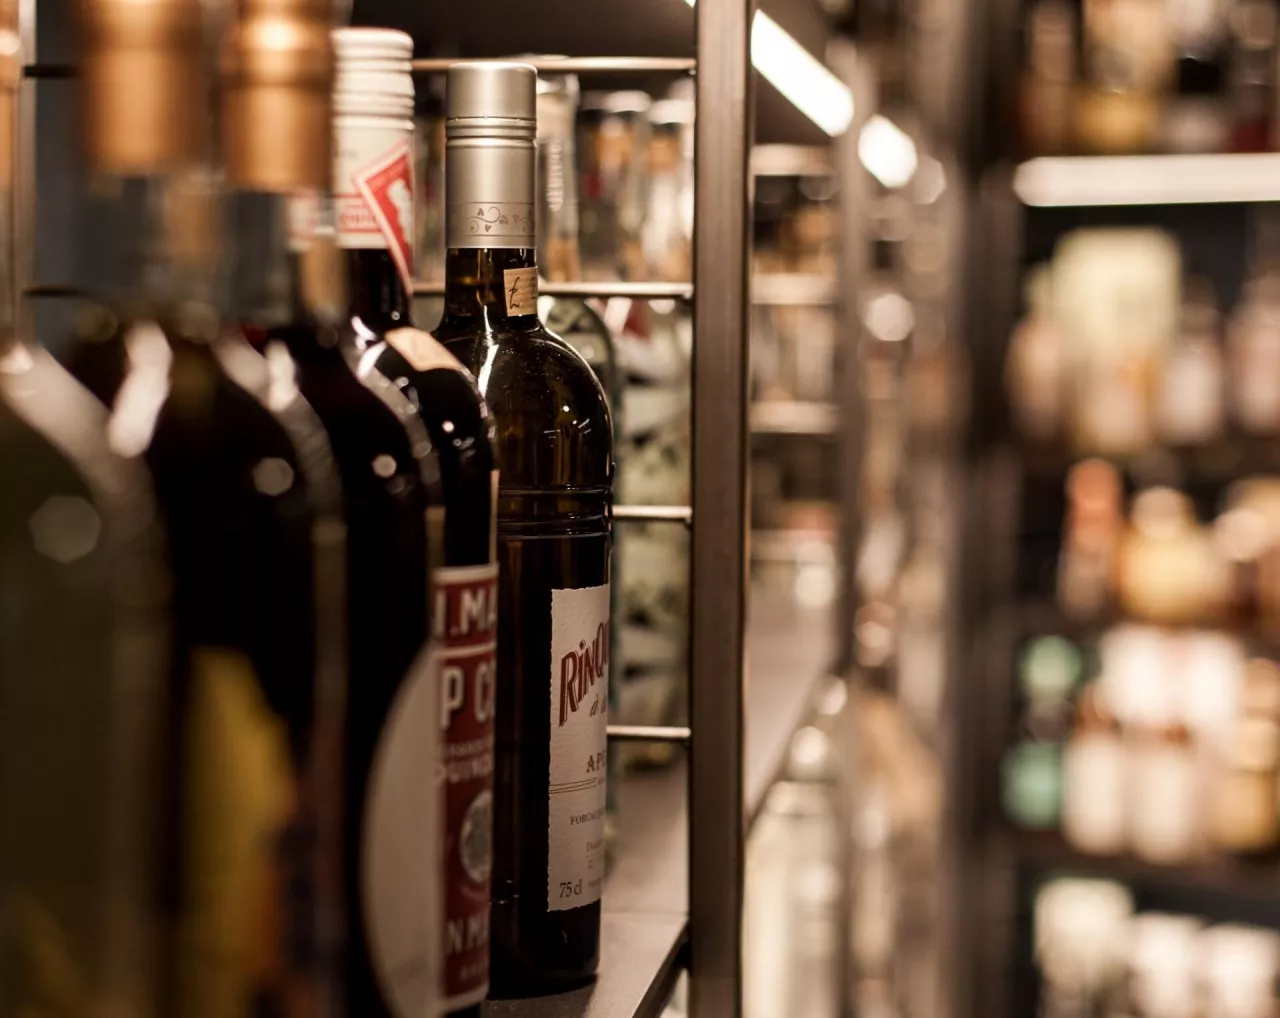 Półka z alkoholami w sklepie (Unsplash.com/Marco Chilese)